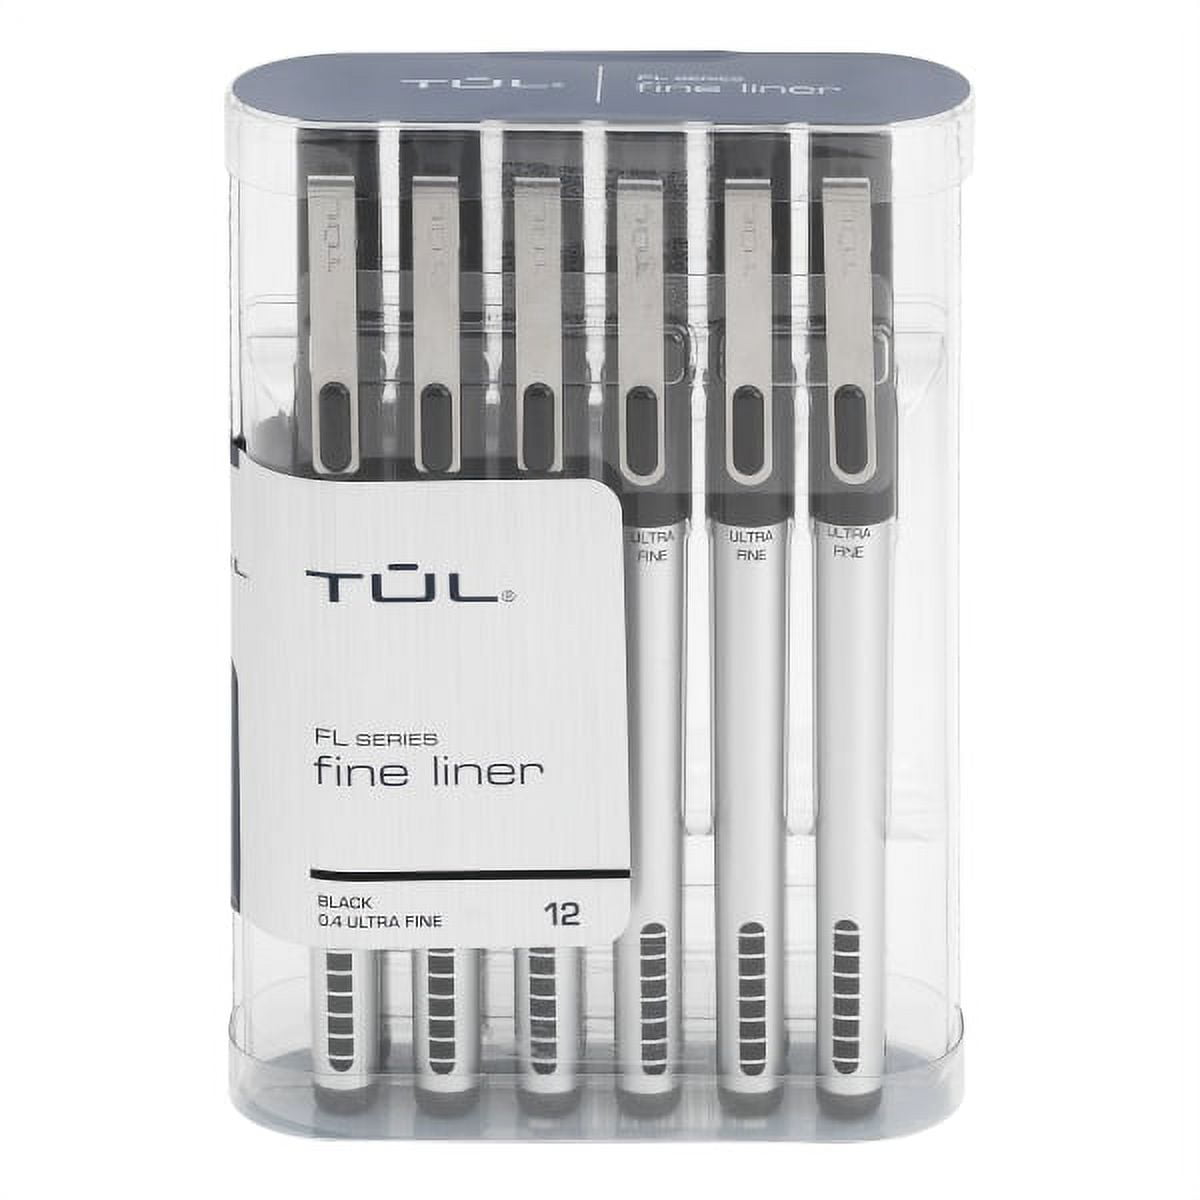 TUL Fine Liner Felt-Tip Pens, Ultra-Fine Point, 0.4 mm, Silver Barrel, Black Ink, Pack of 12 Pens